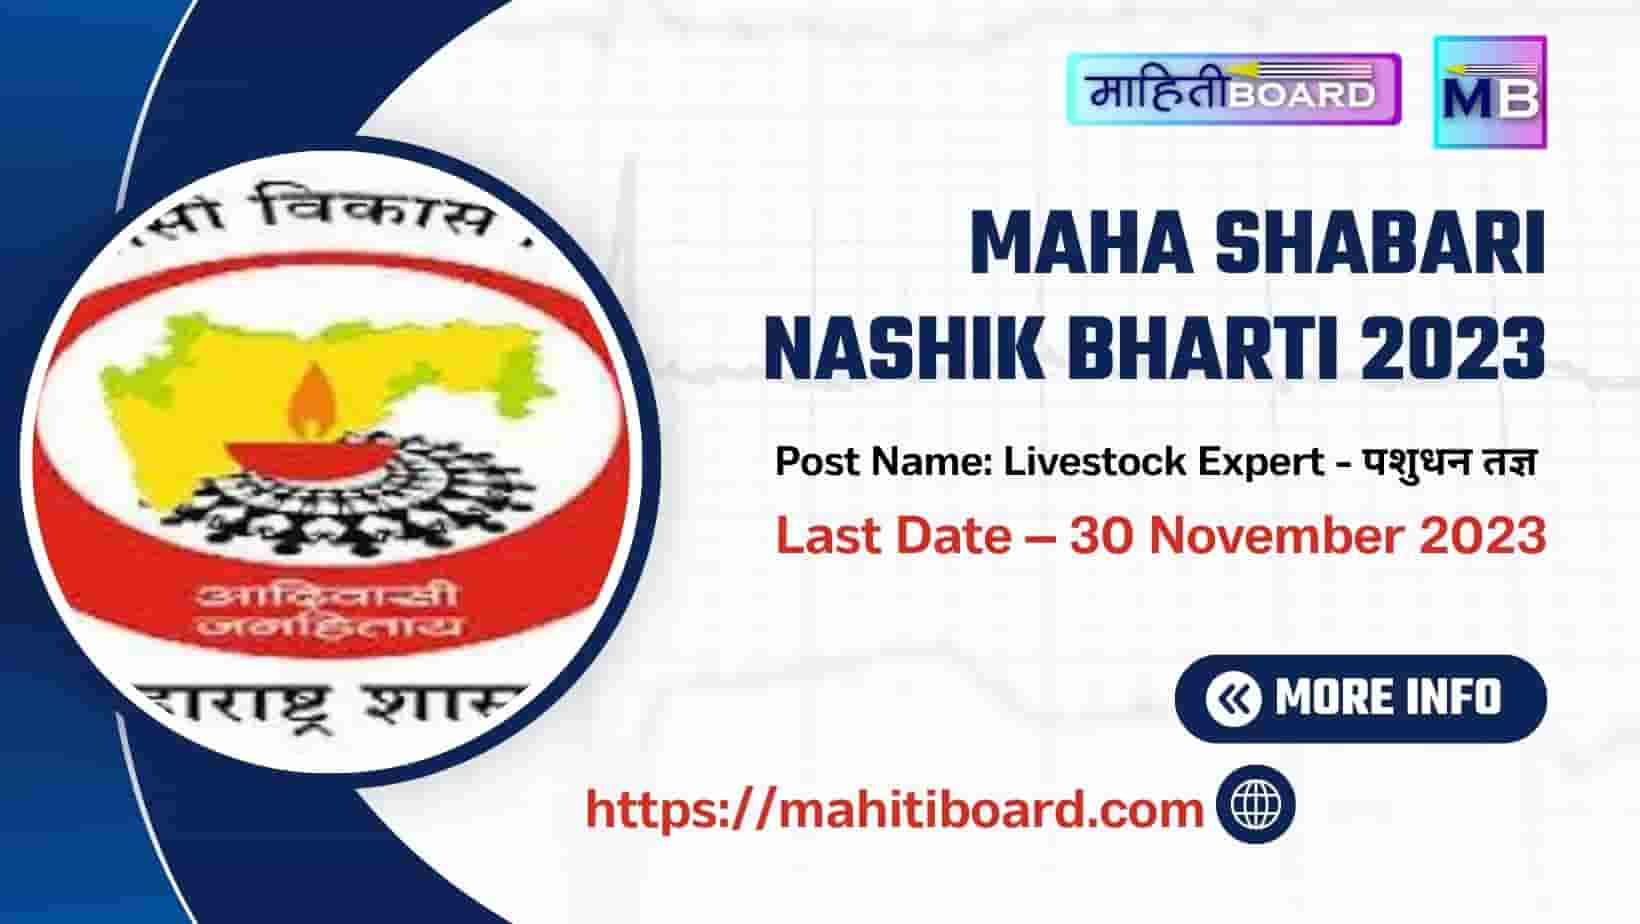 Maha Shabari Nashik Bharti 2023